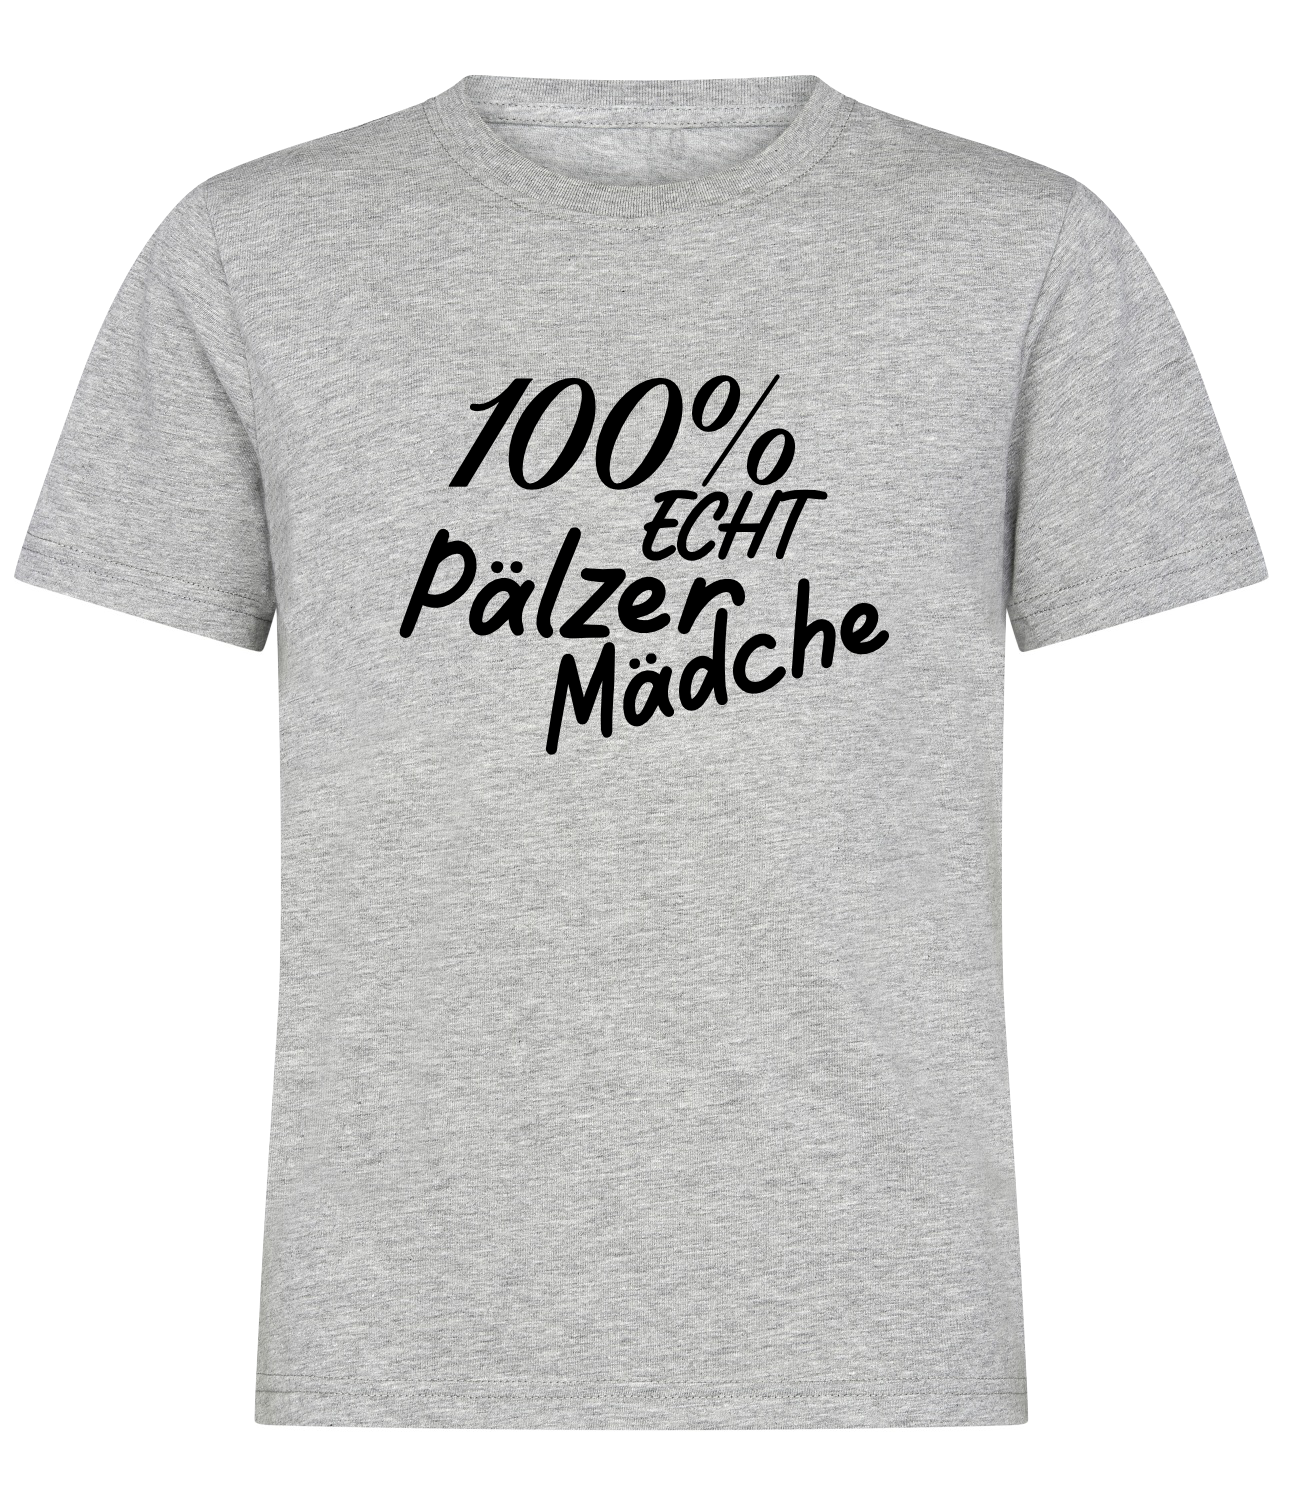 KIDS pREHmium Shirt - 100% Pälzer Mädche